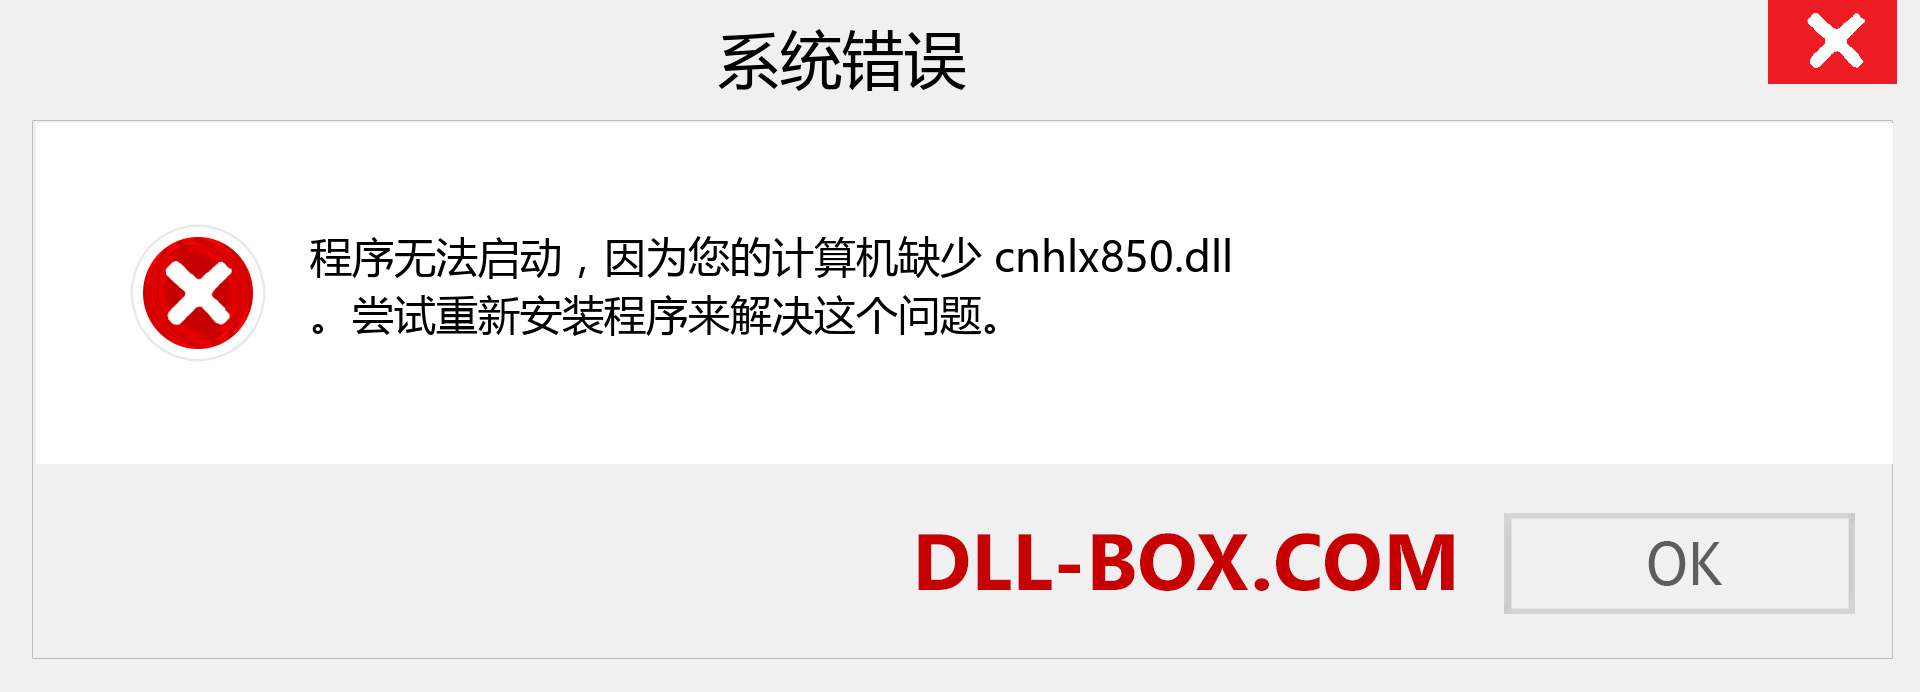 cnhlx850.dll 文件丢失？。 适用于 Windows 7、8、10 的下载 - 修复 Windows、照片、图像上的 cnhlx850 dll 丢失错误